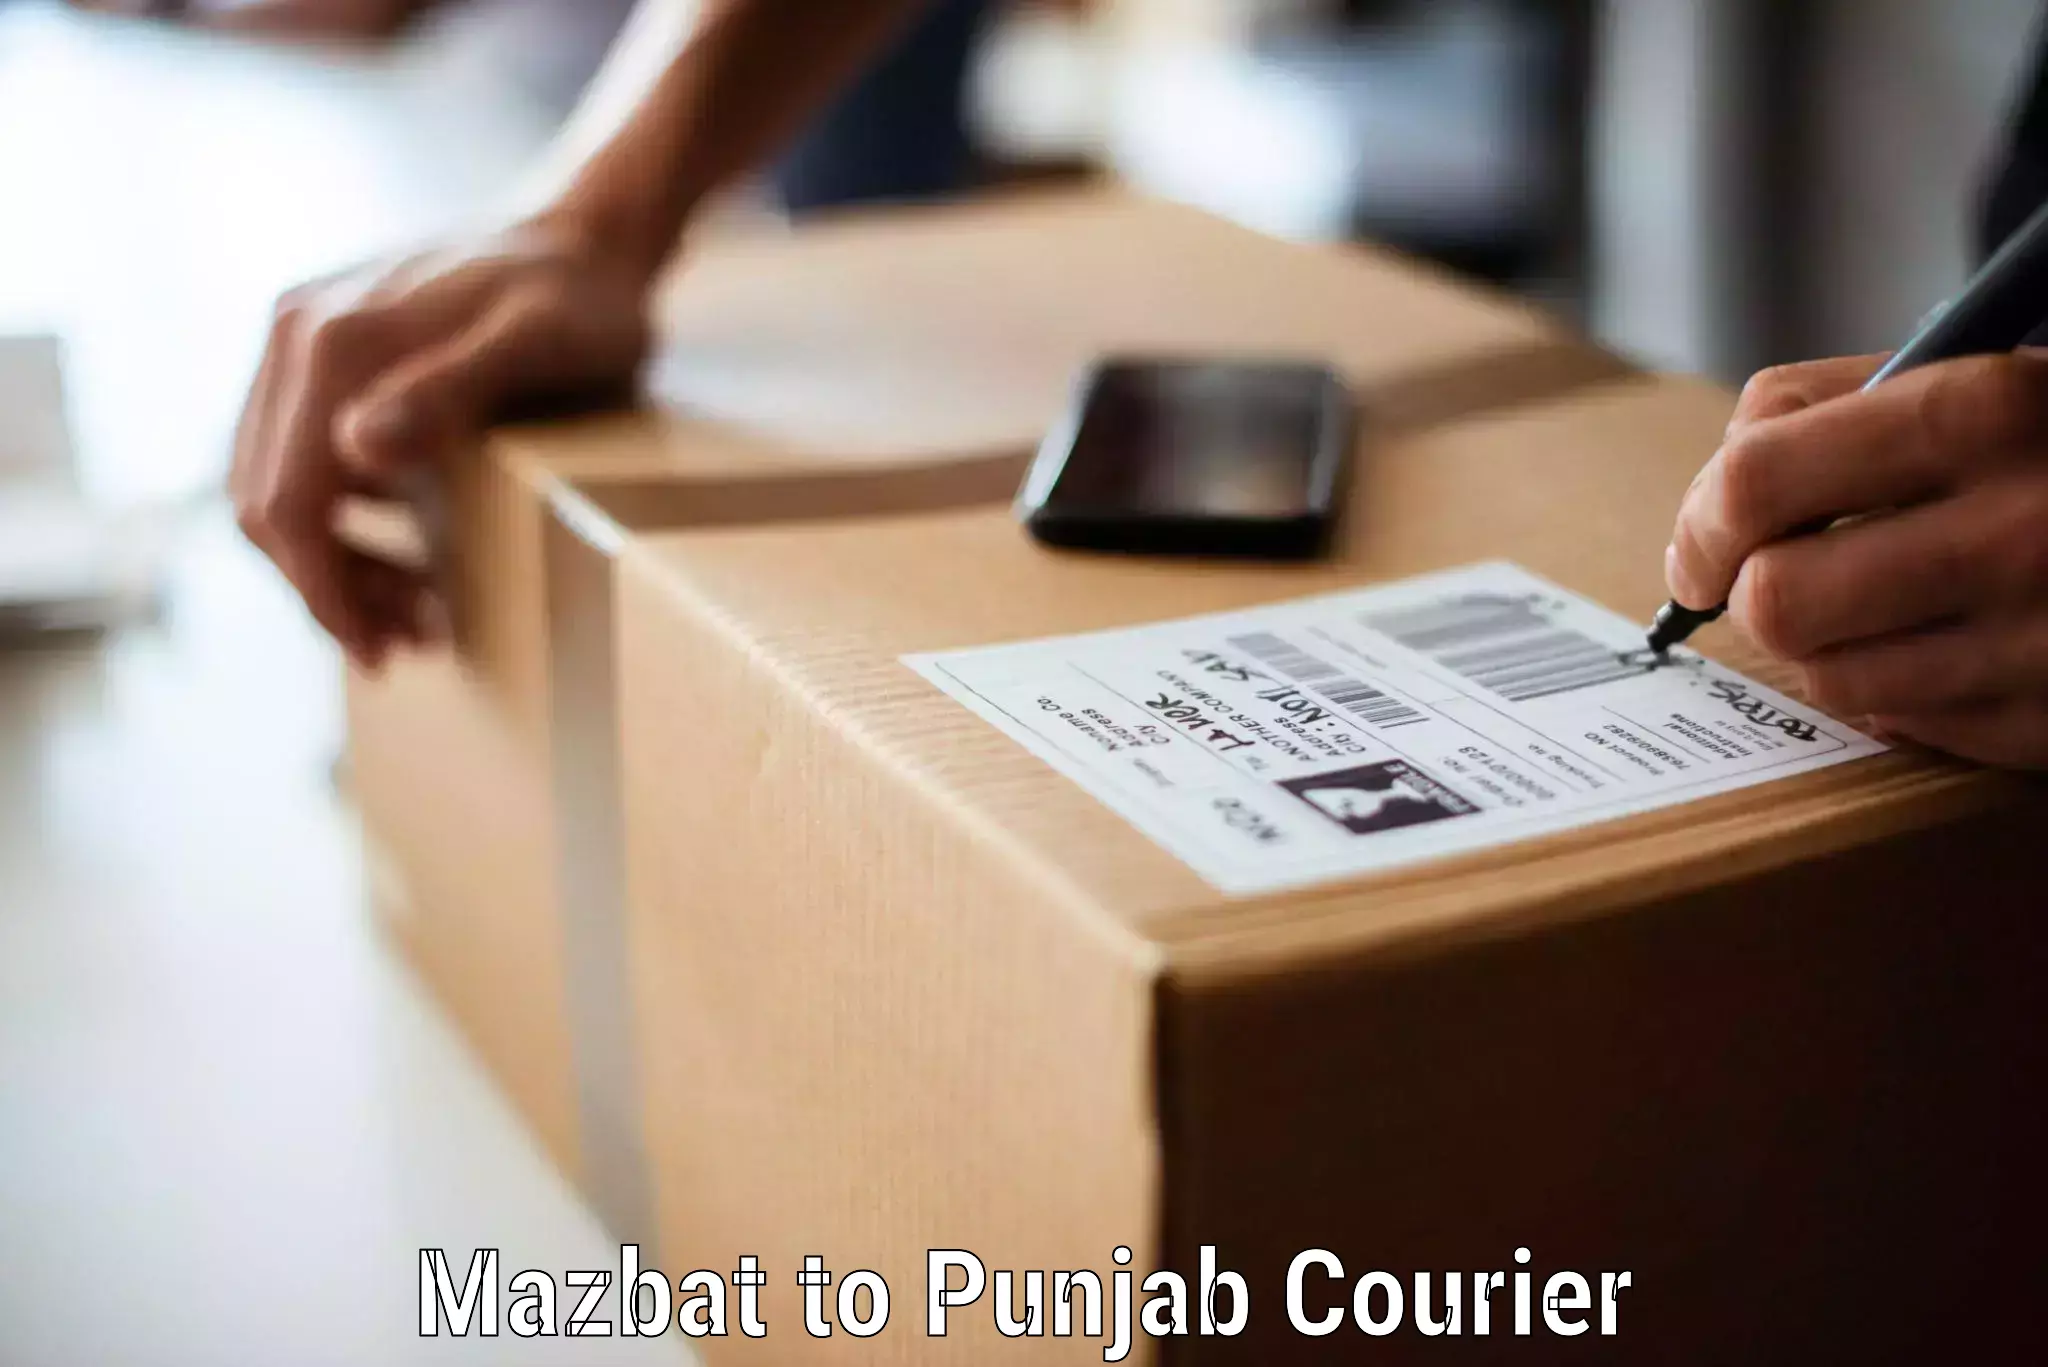 Furniture transport services Mazbat to Punjab